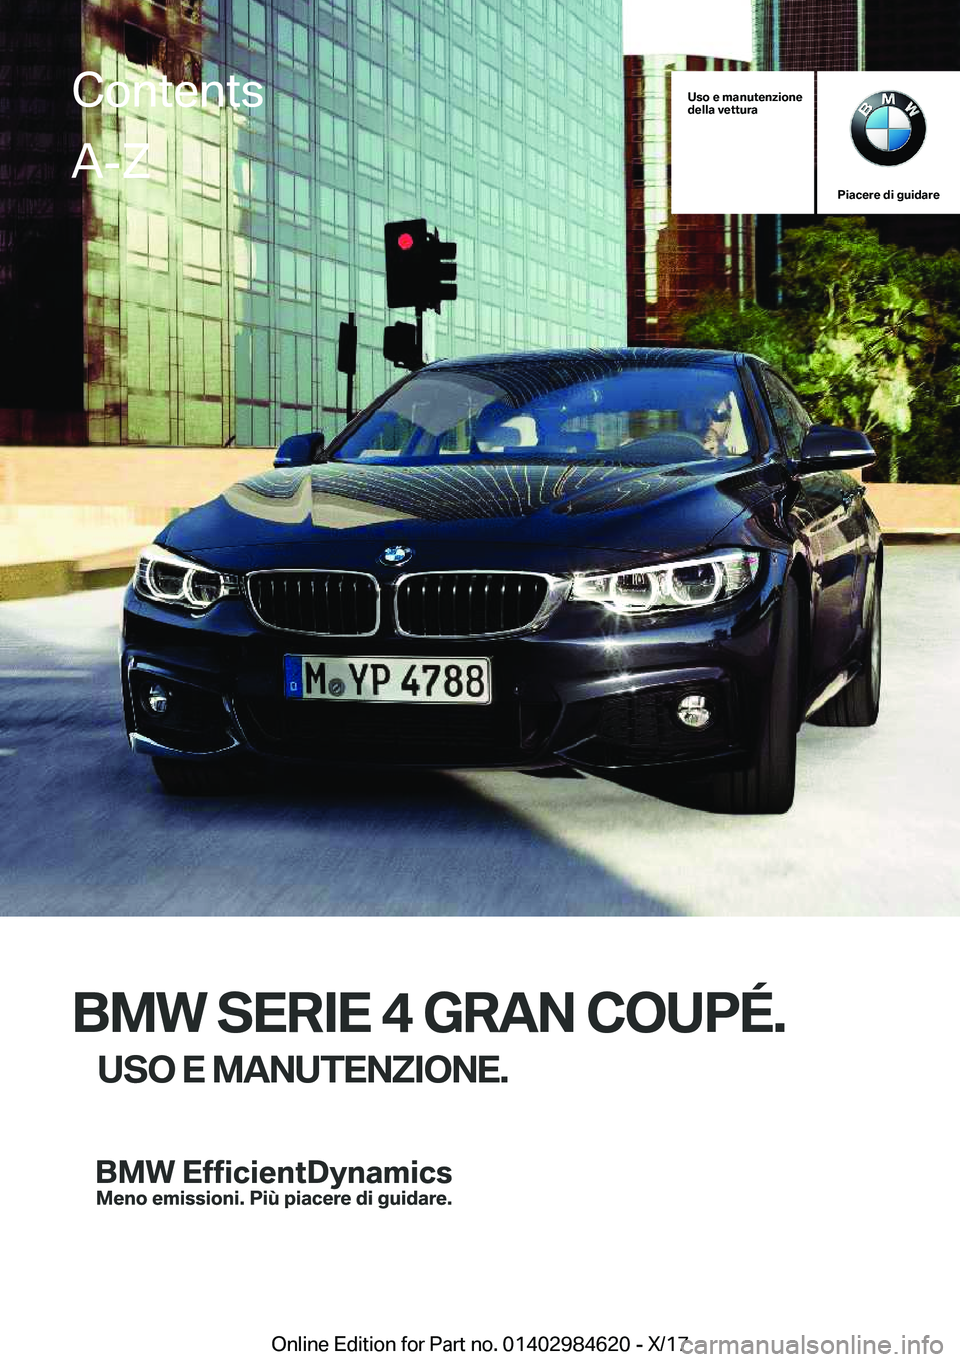 BMW 4 SERIES GRAN COUPE 2018  Libretti Di Uso E manutenzione (in Italian) �U�s�o��e��m�a�n�u�t�e�n�z�i�o�n�e
�d�e�l�l�a��v�e�t�t�u�r�a
�P�i�a�c�e�r�e��d�i��g�u�i�d�a�r�e
�B�M�W��S�E�R�I�E��4��G�R�A�N��C�O�U�P�